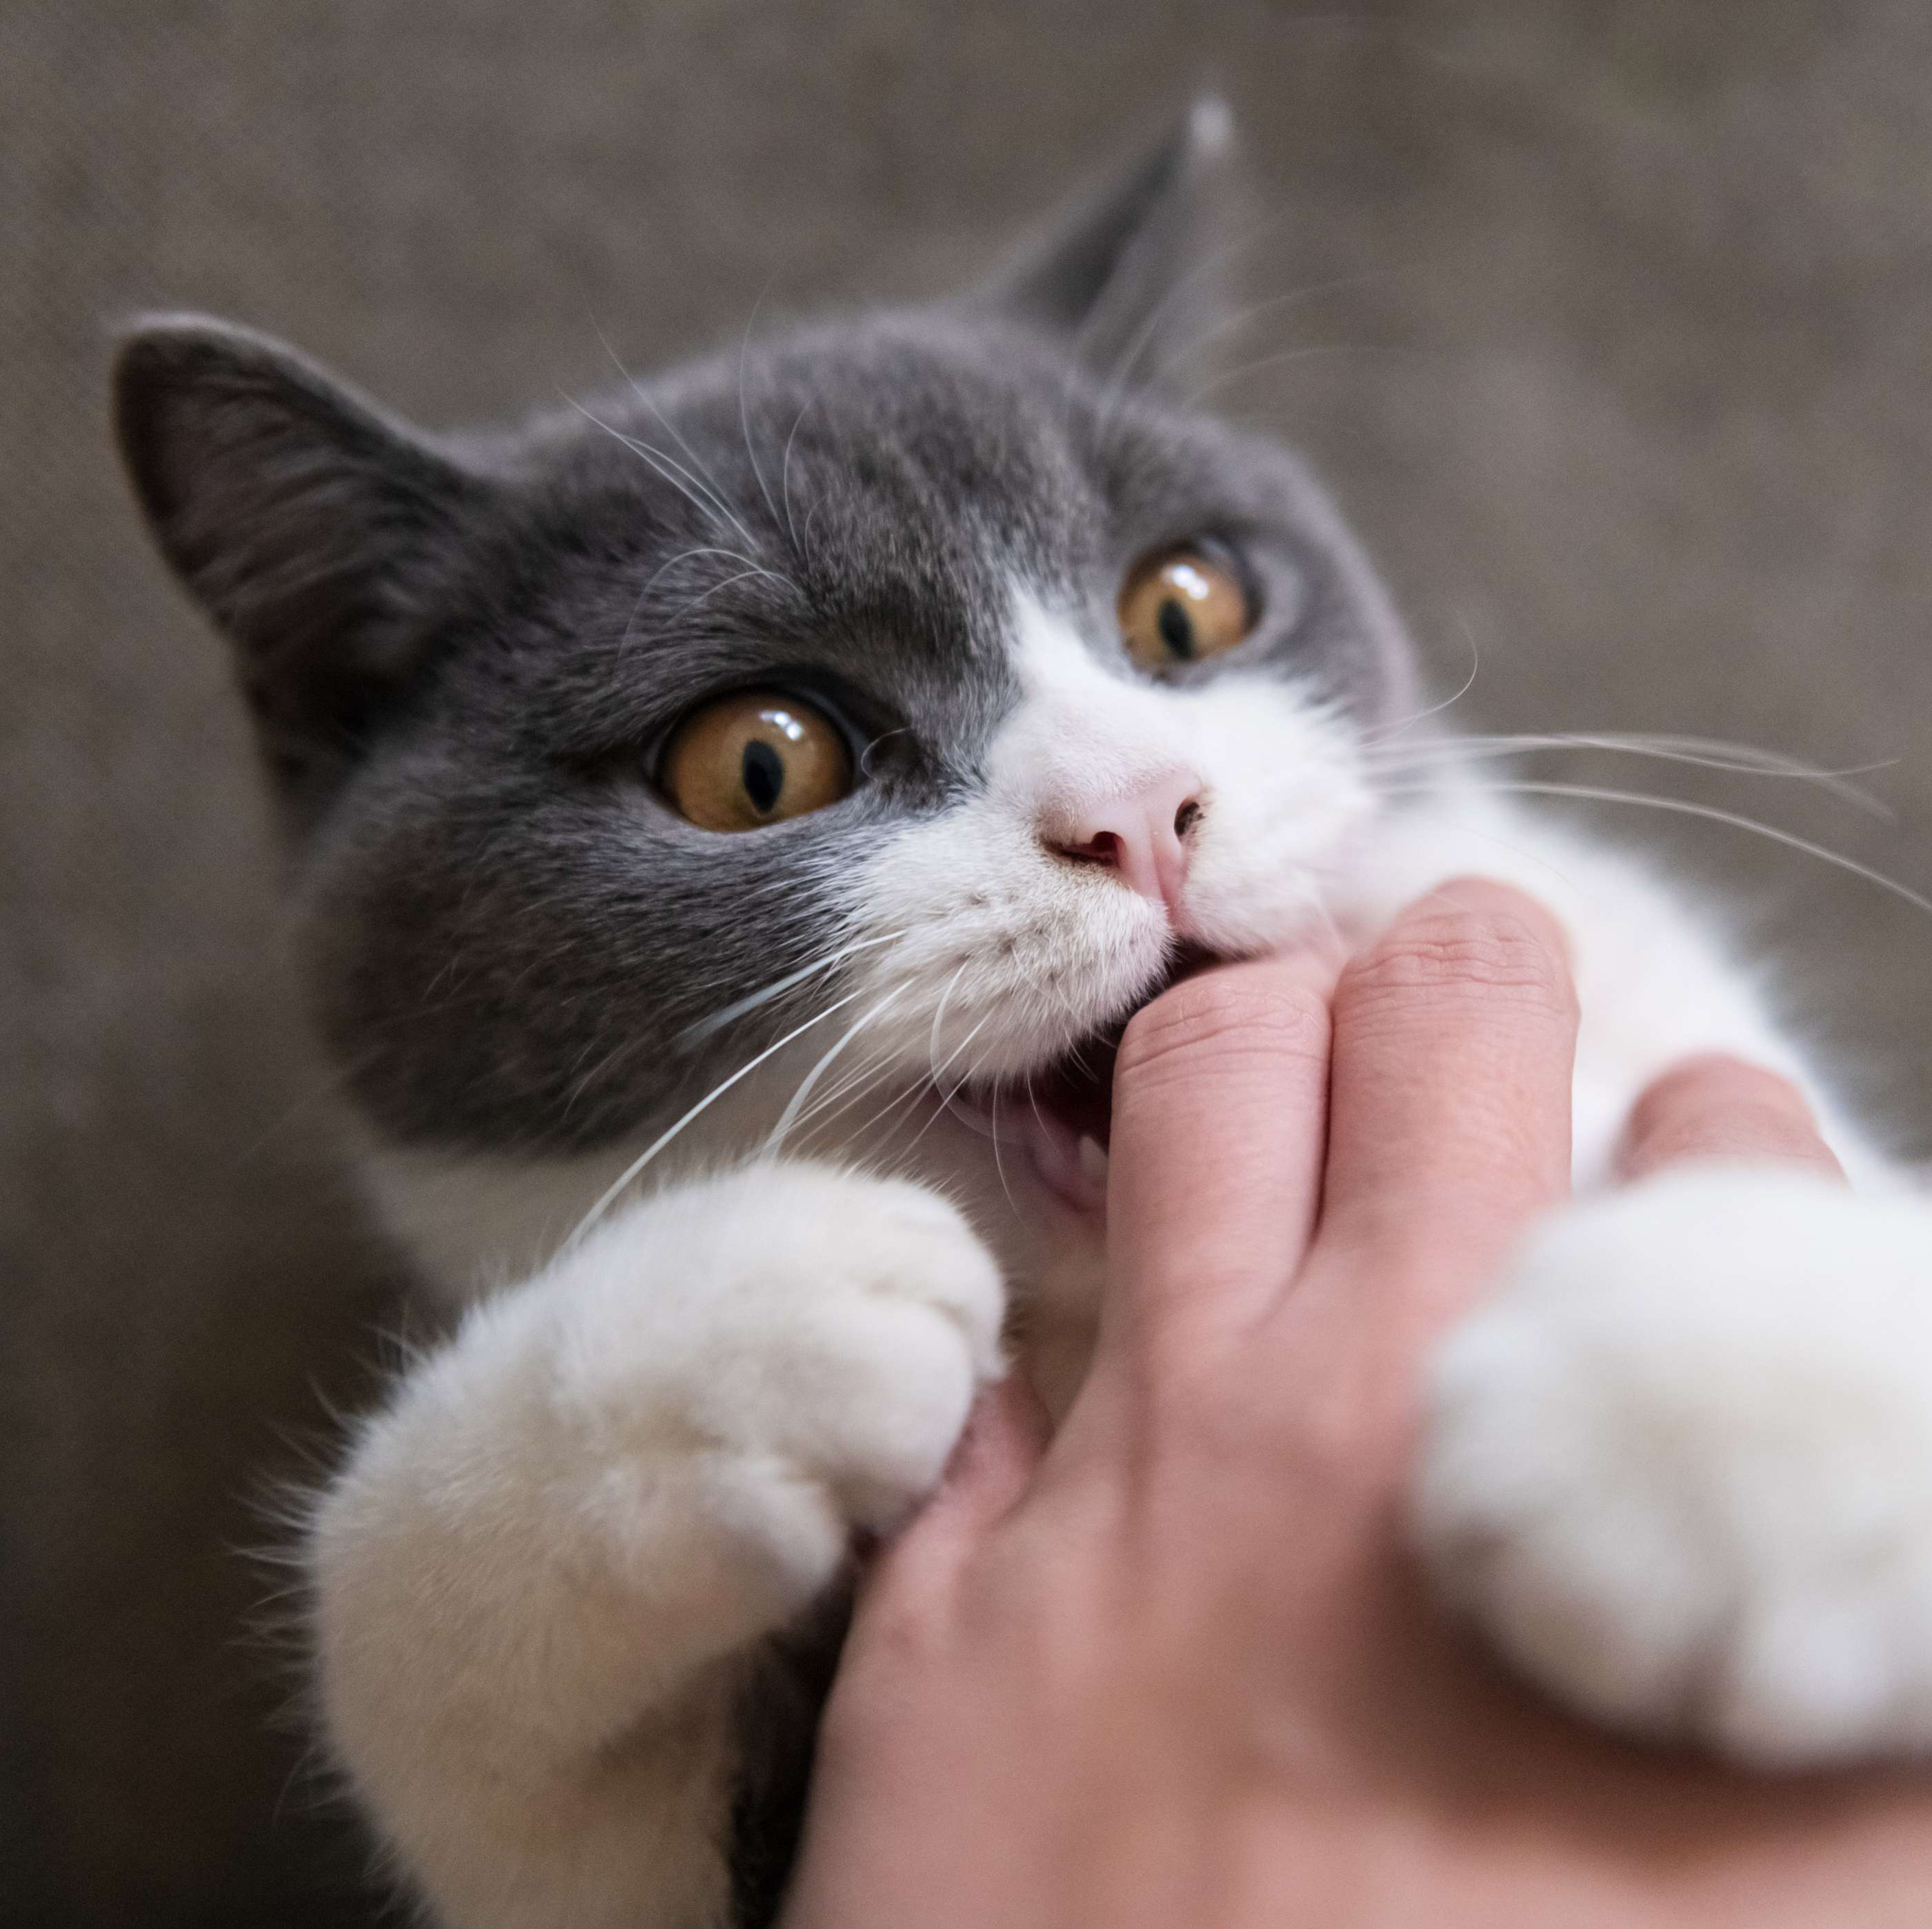 Katzen Haftpflichtversicherung: Getigerte Katze liegt auf dem Schoß einer Frau, krallt sich ihn ihre Hand und beißt ihr in die Finger